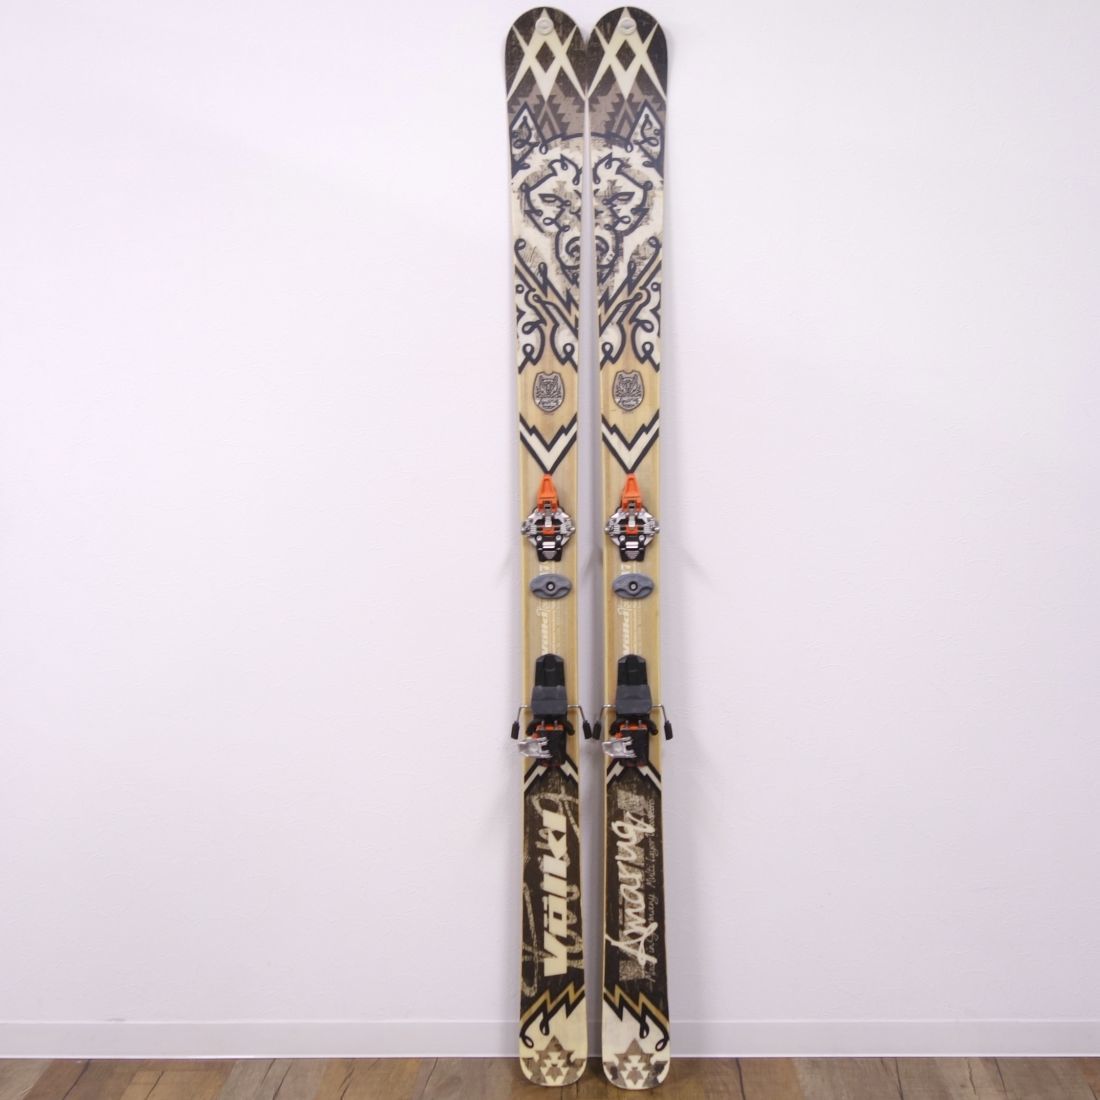 美品 フォルクル Volkl BCスキー Amaruq アマルク 170cm 山スキー DYNAFIT TLT RADICAL ST BALTORO シール アイゼン ch12os-rk26y01825